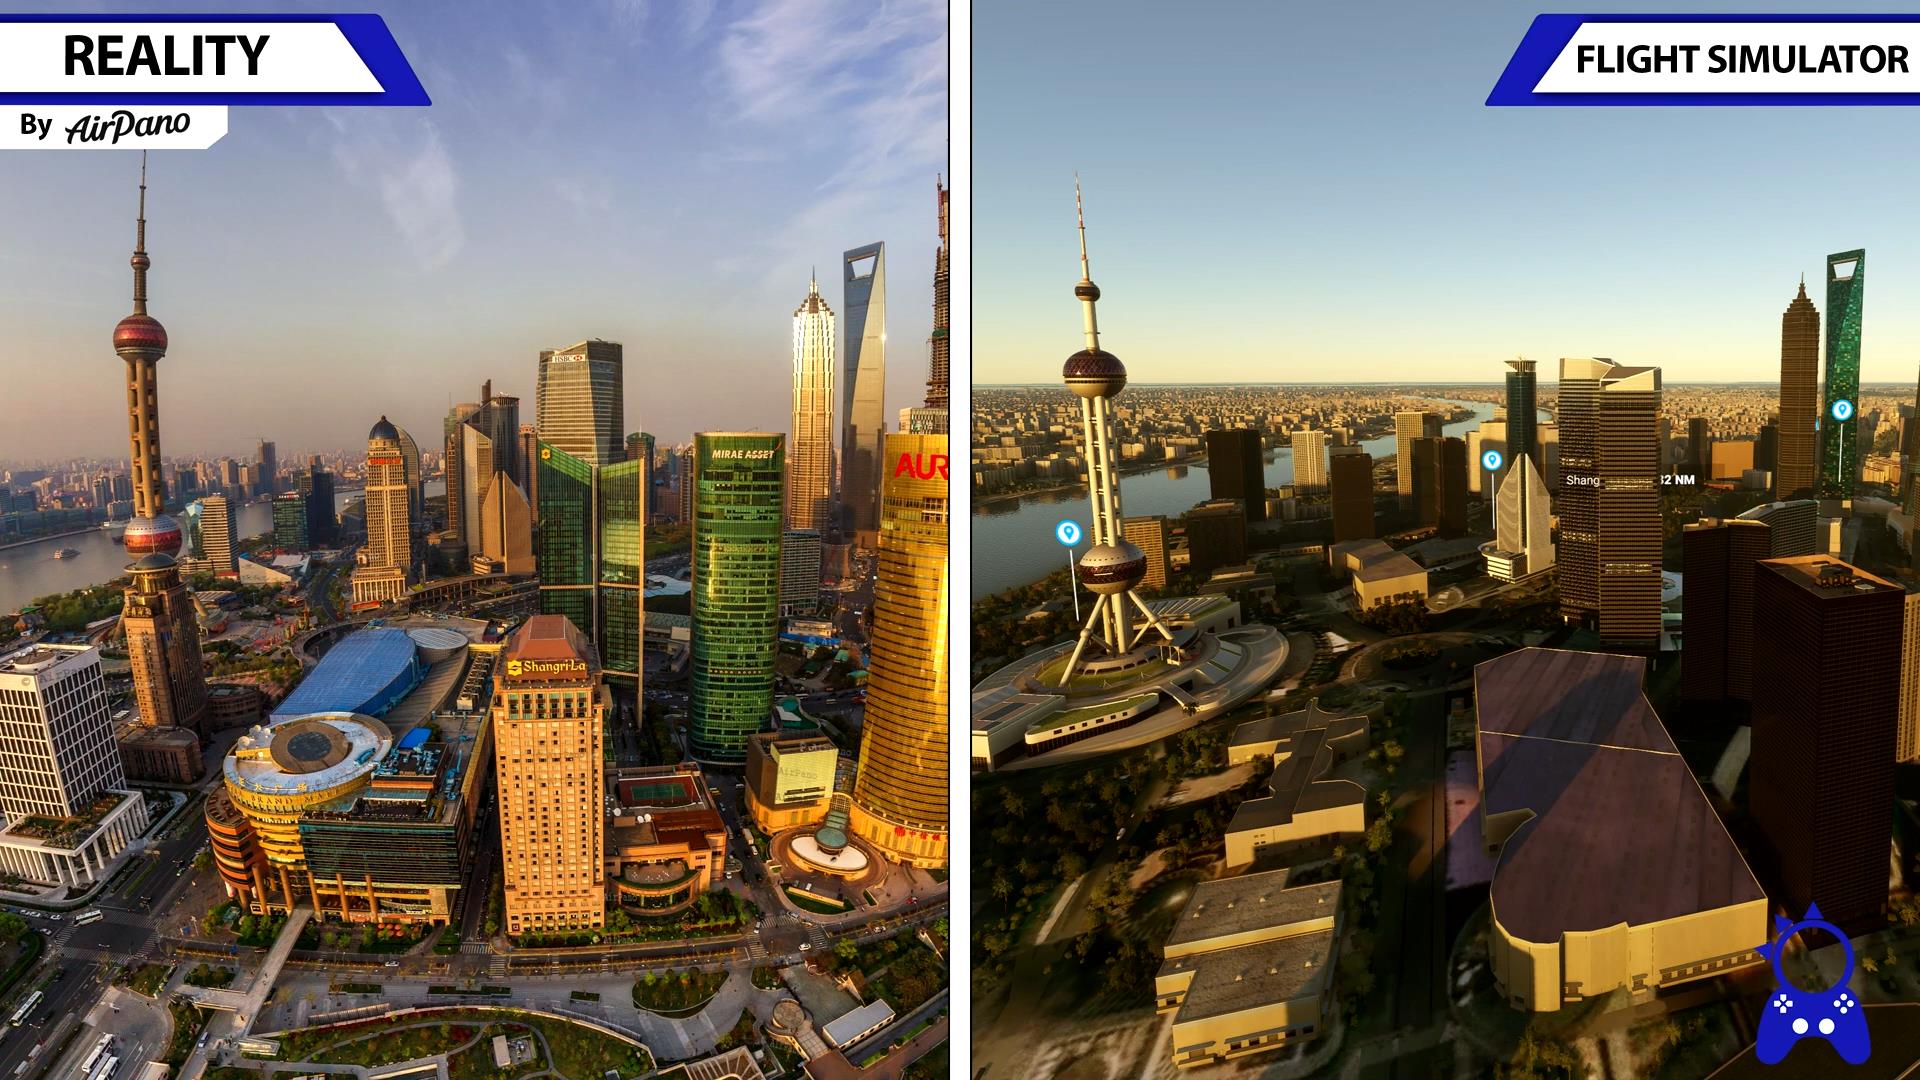 《微软飞行模拟》游戏画面与现实场景对比视频-4604 